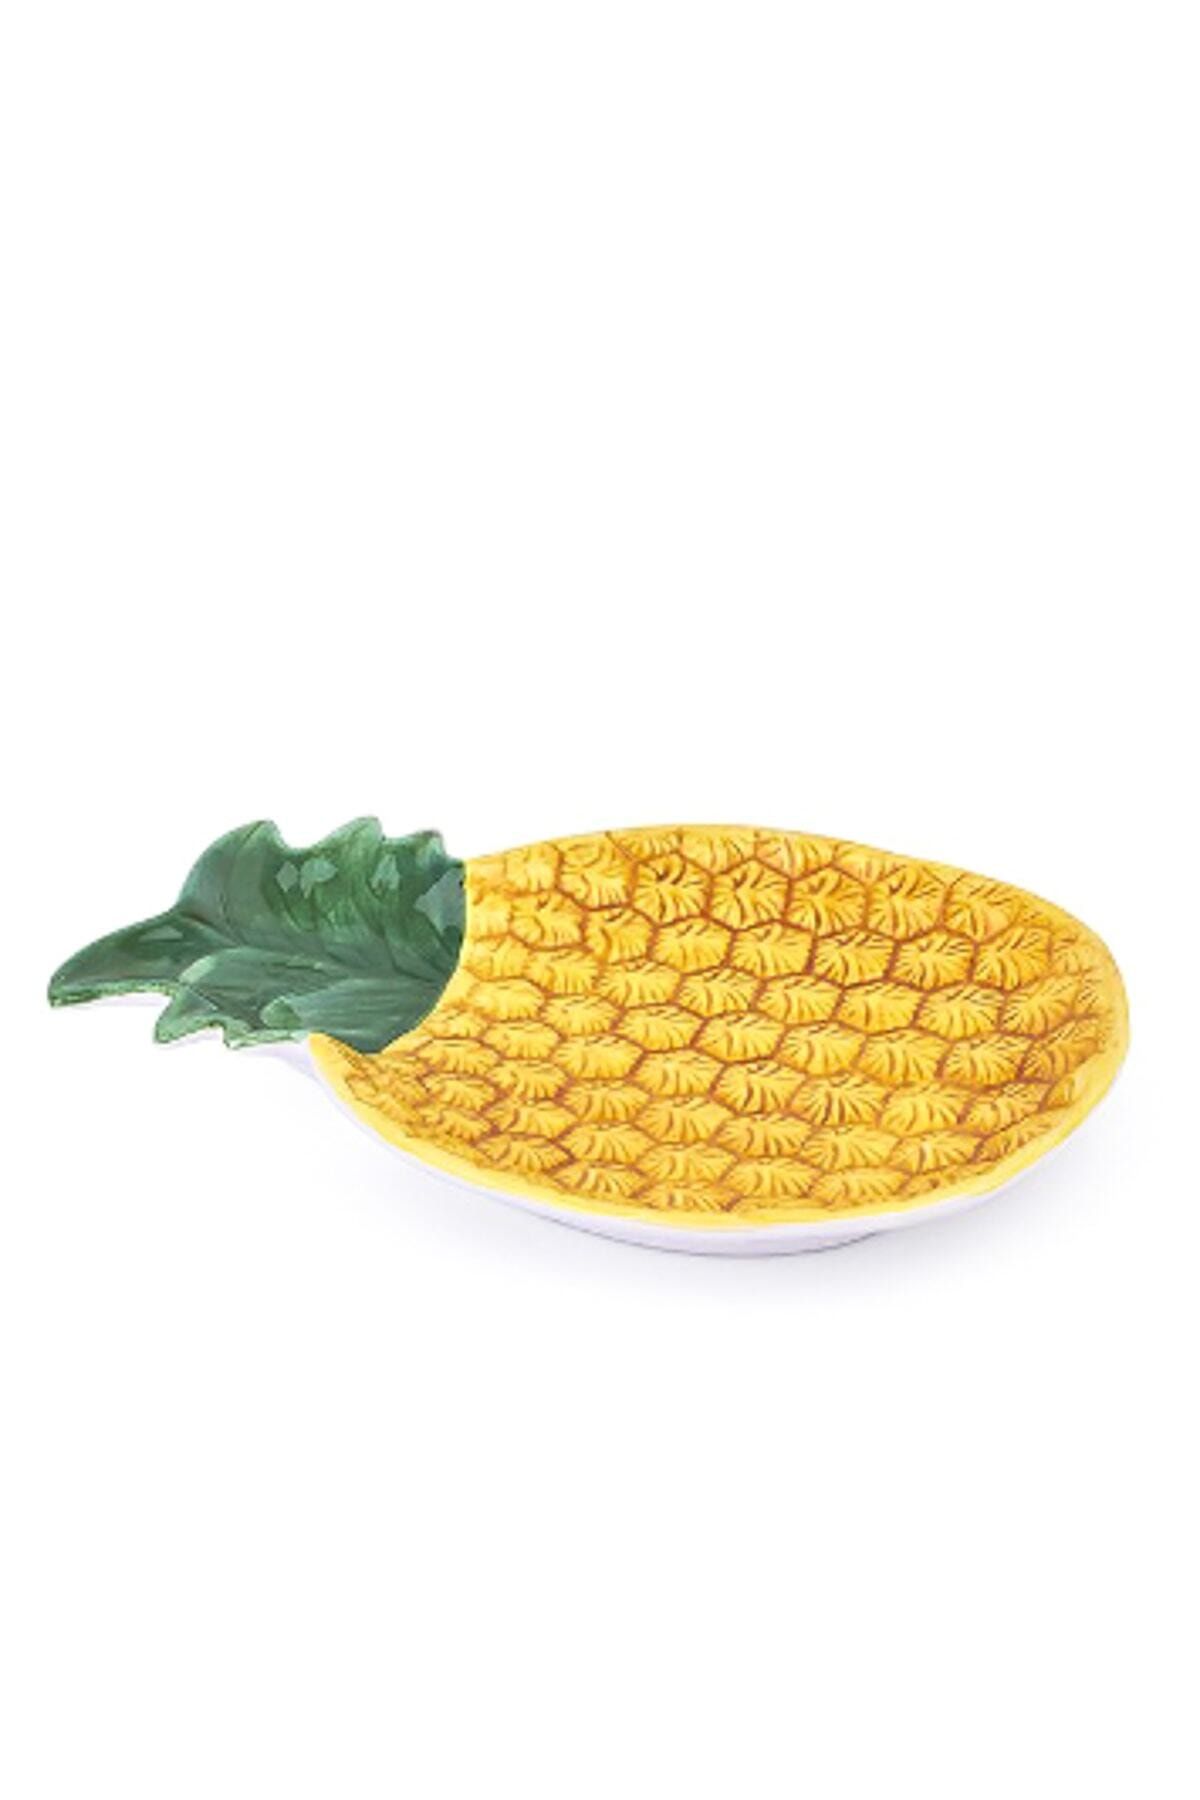 ACAR Ananas Tabak 27 cm